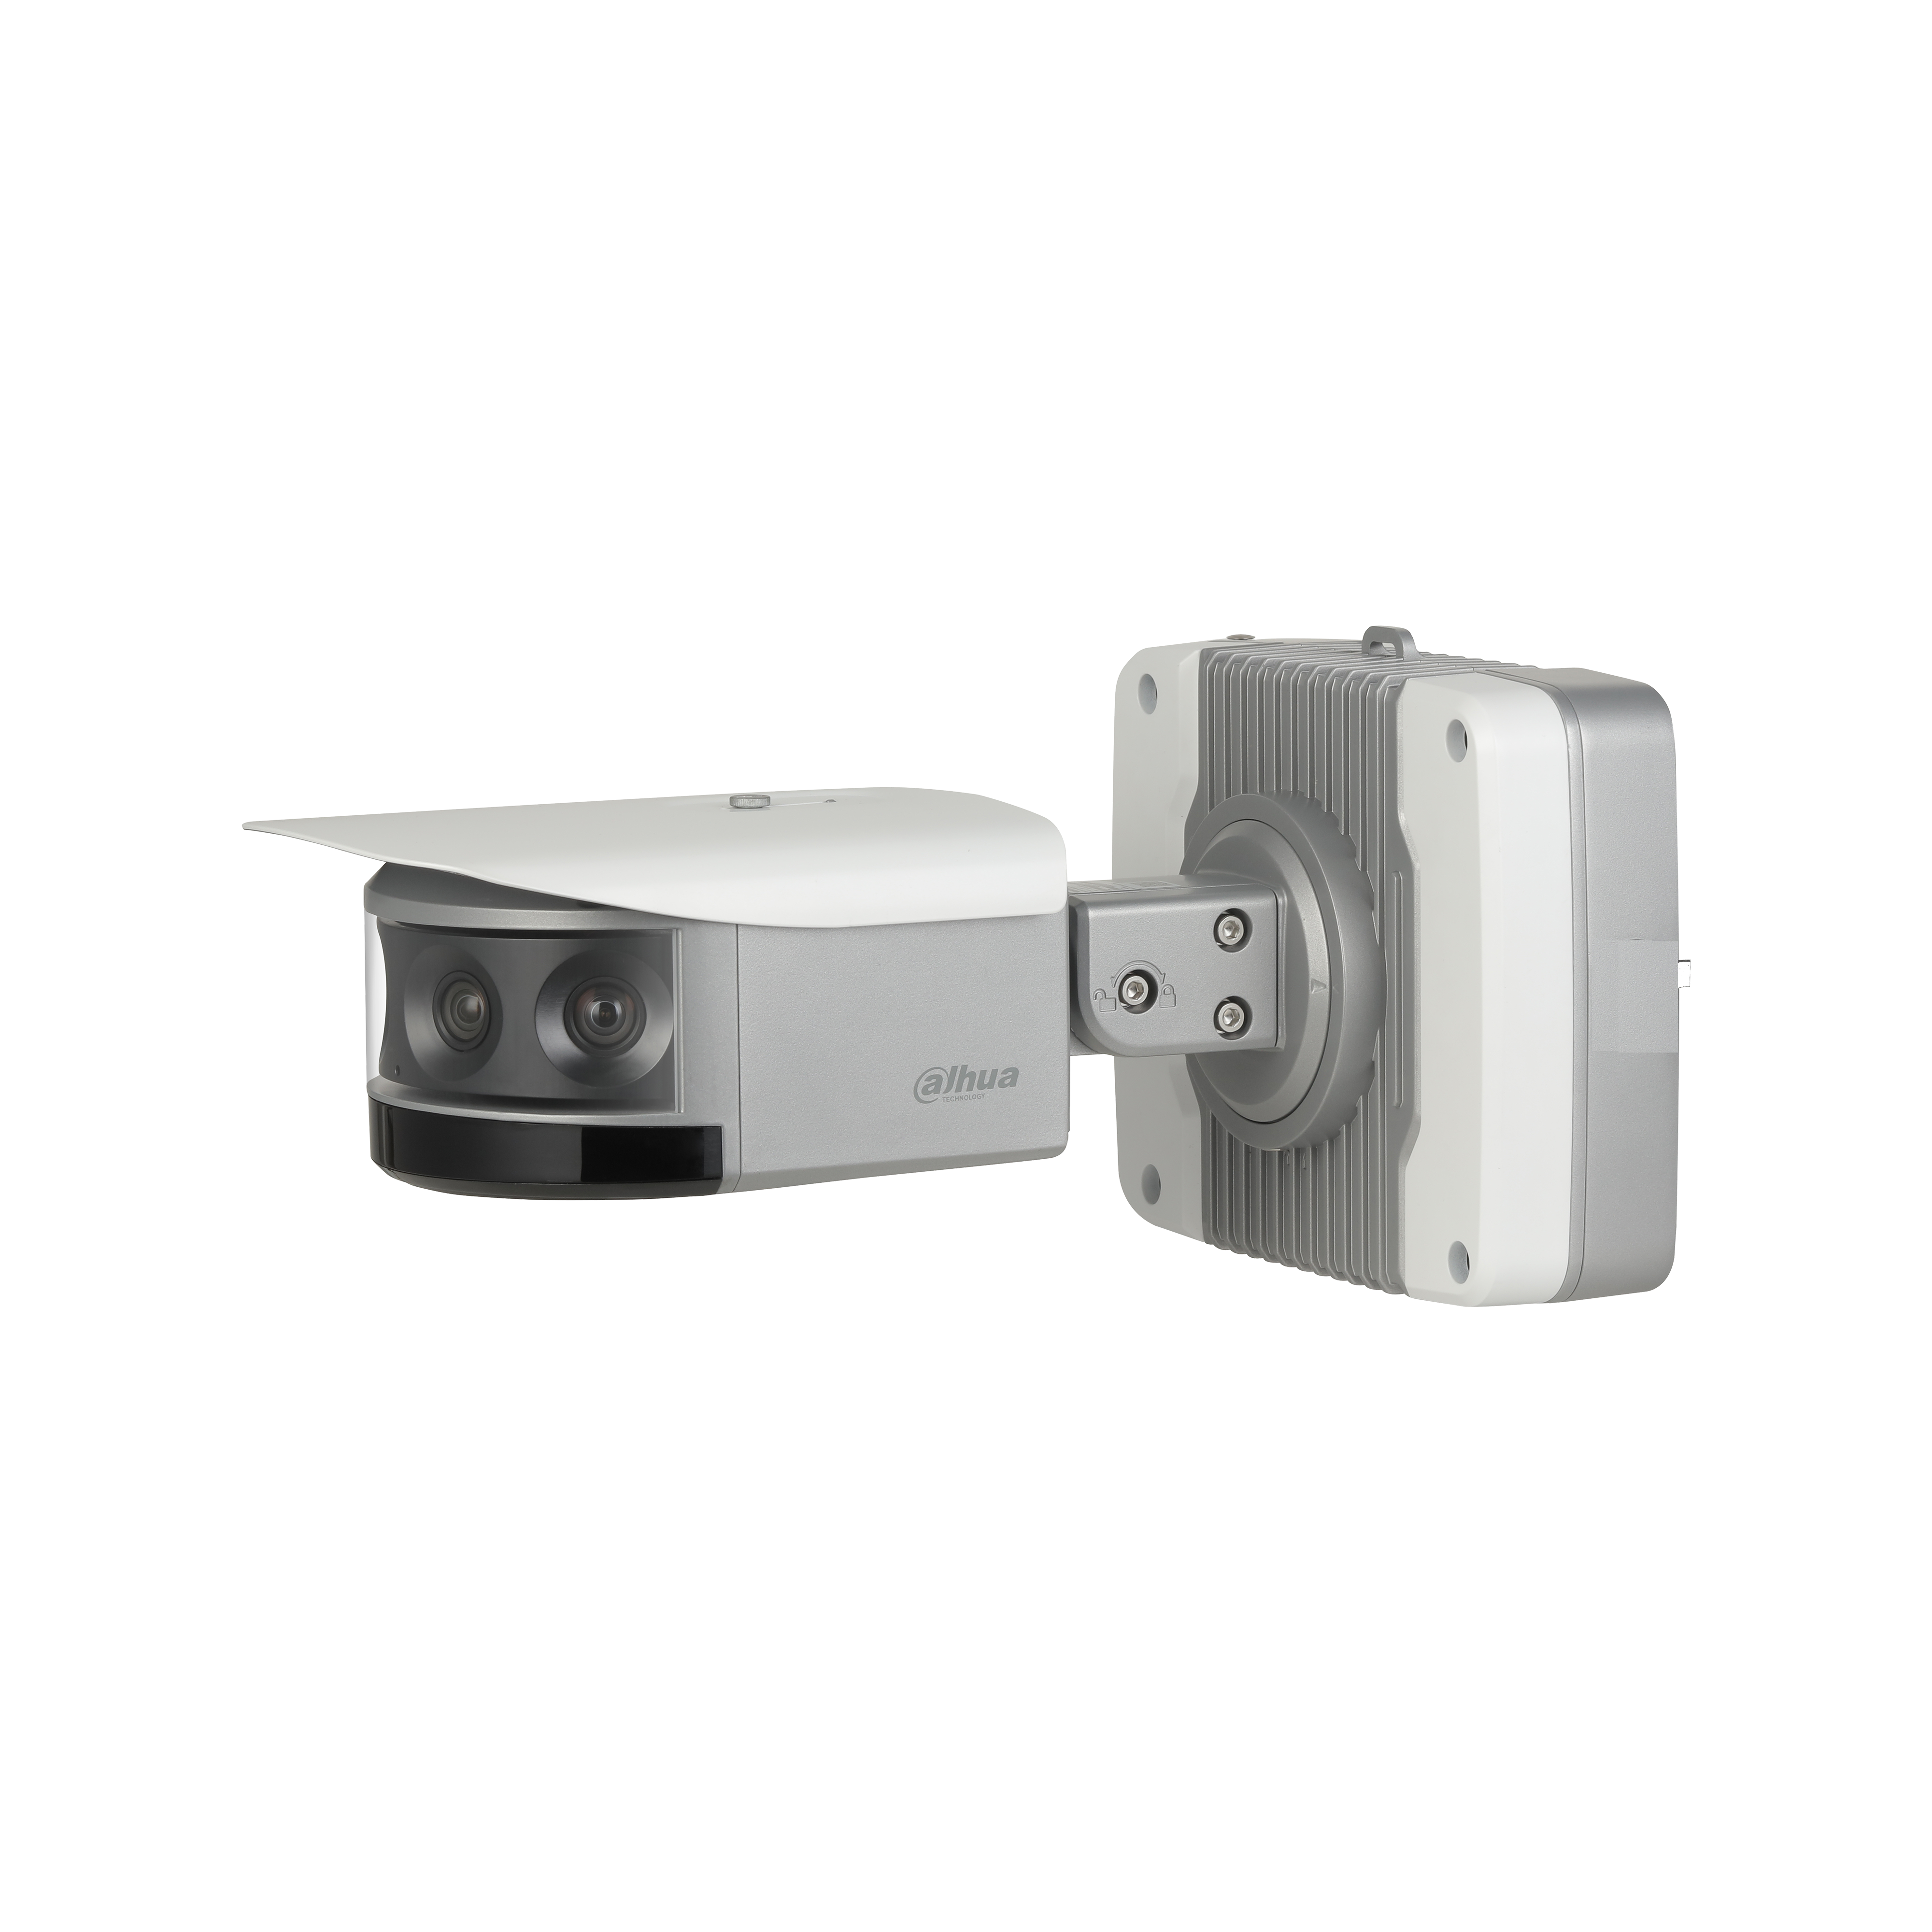 DAHUA IPC-PF83230-A180 4x8MP Multi-Sensor Panoramic Bullet Network Camera